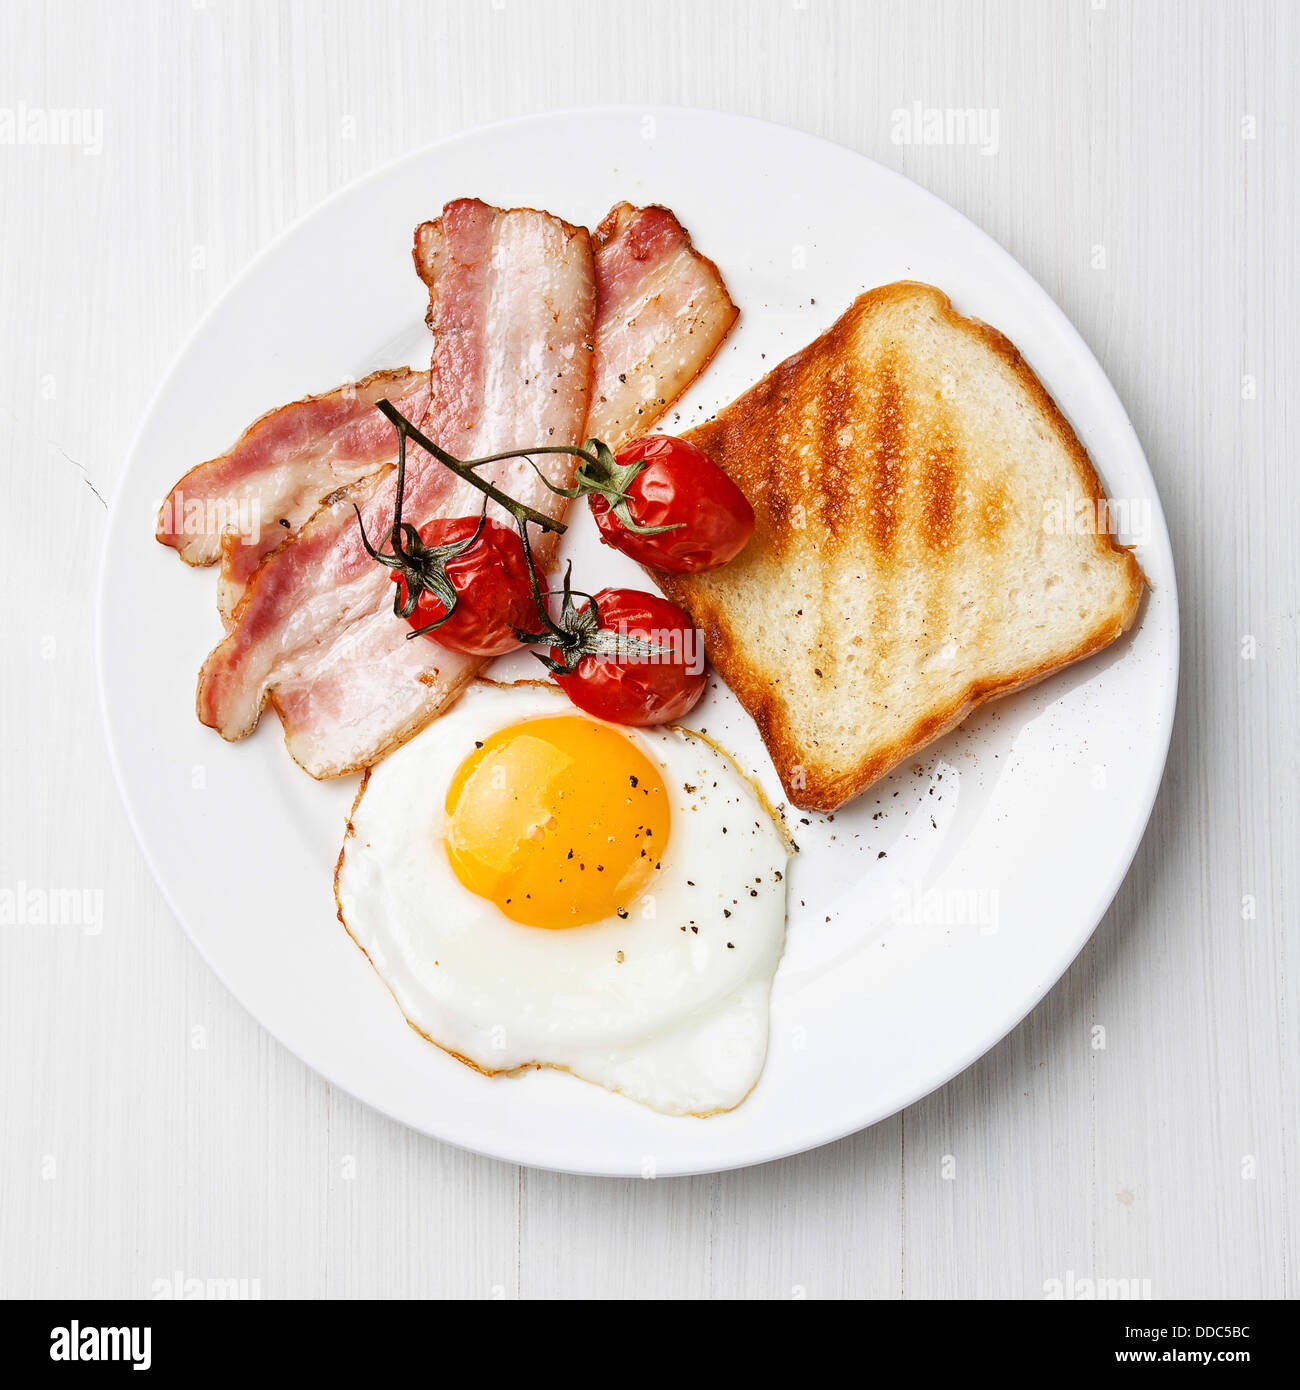 Desayuno con huevo frito y panceta en la placa Foto de stock